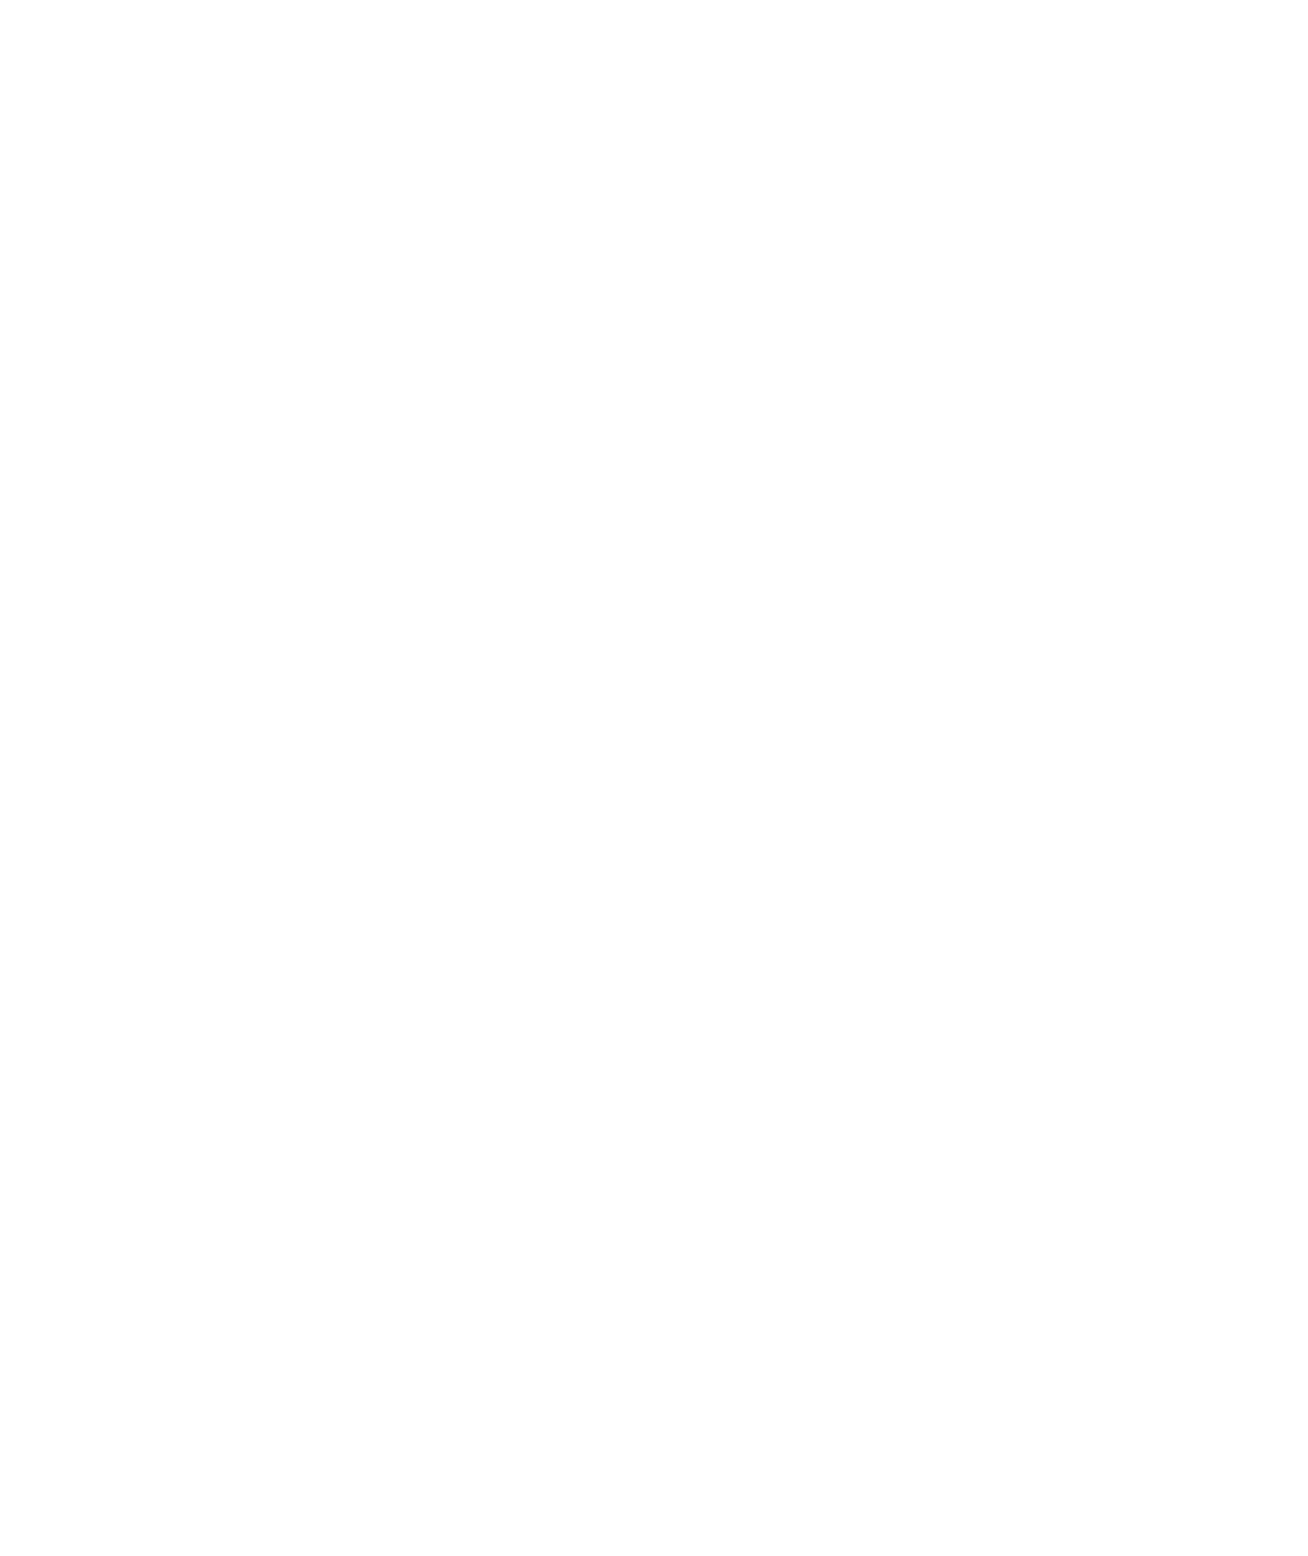 Hologic logo for dark backgrounds (transparent PNG)